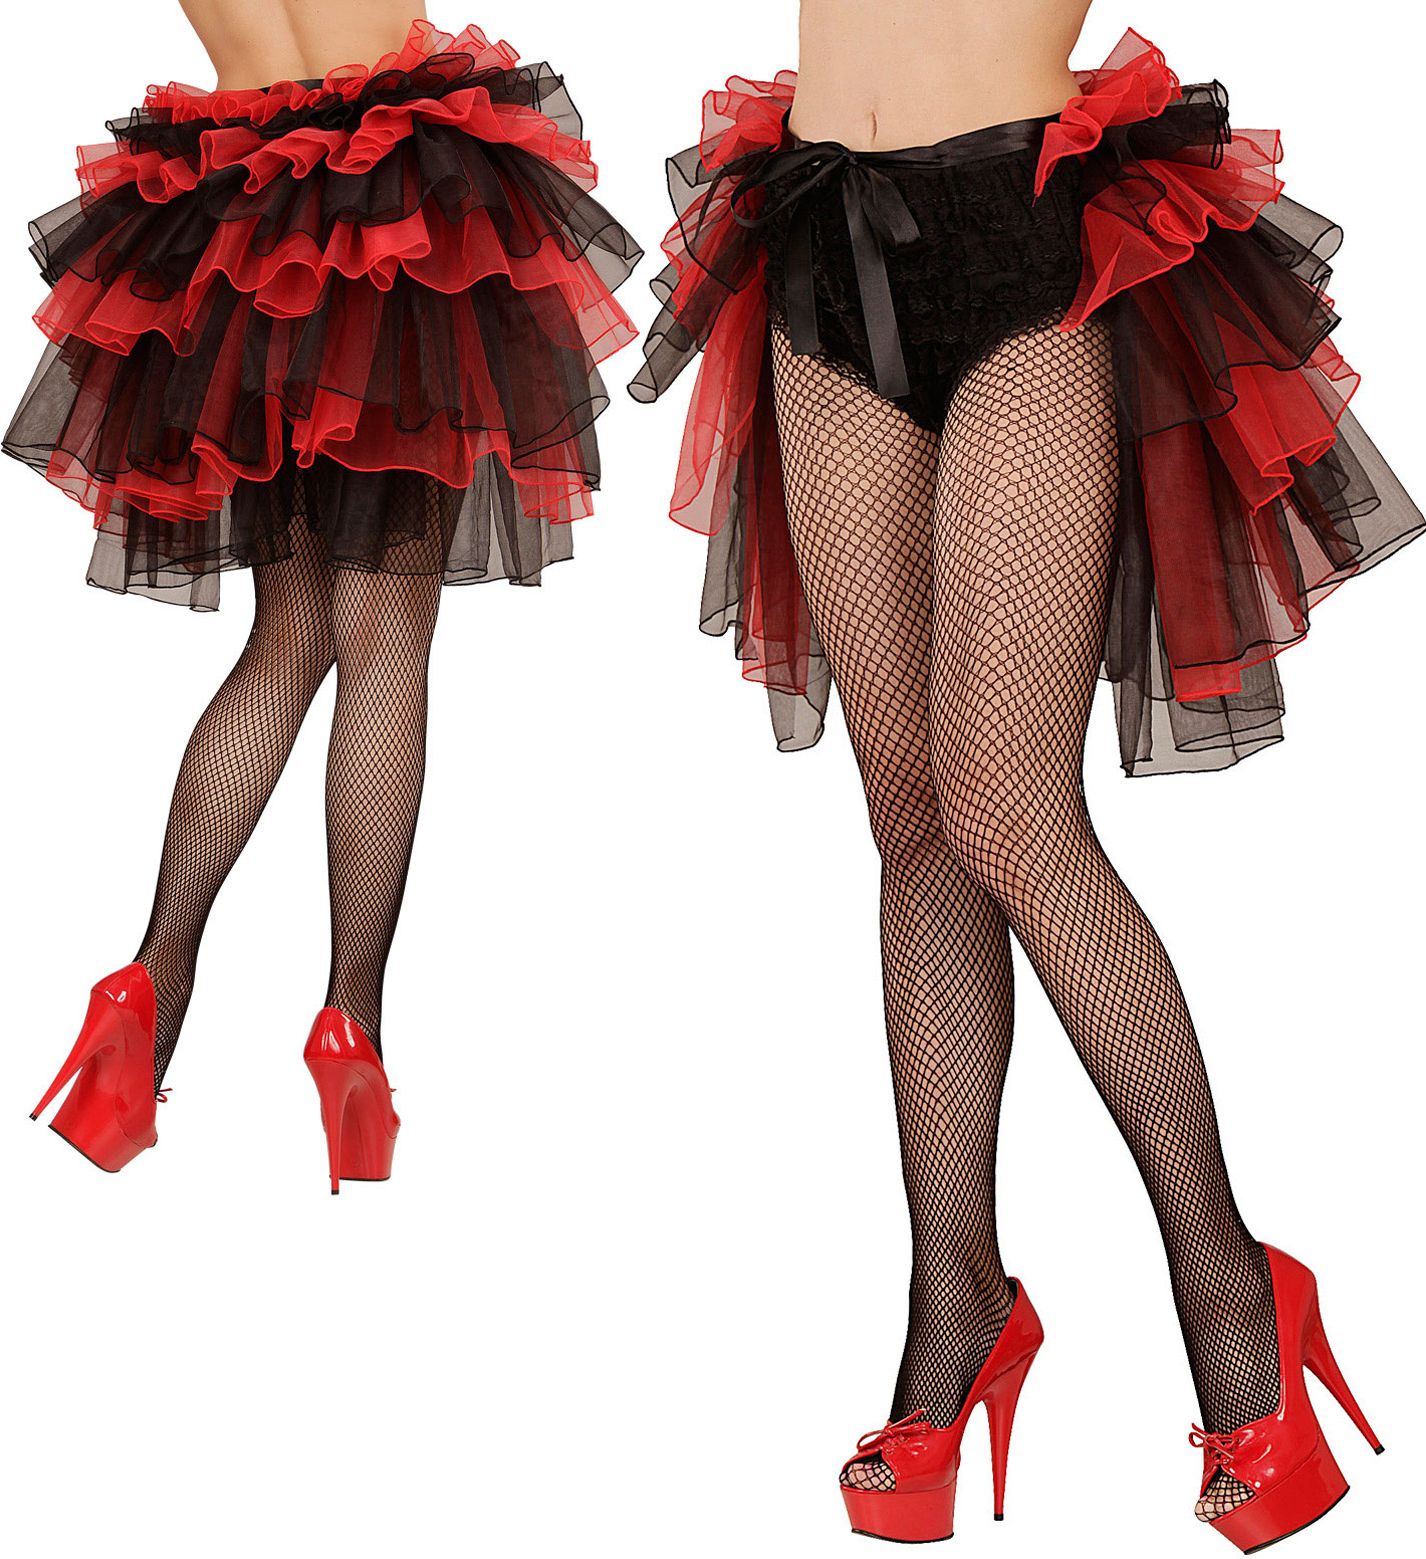 Burlesque rok rood zwart